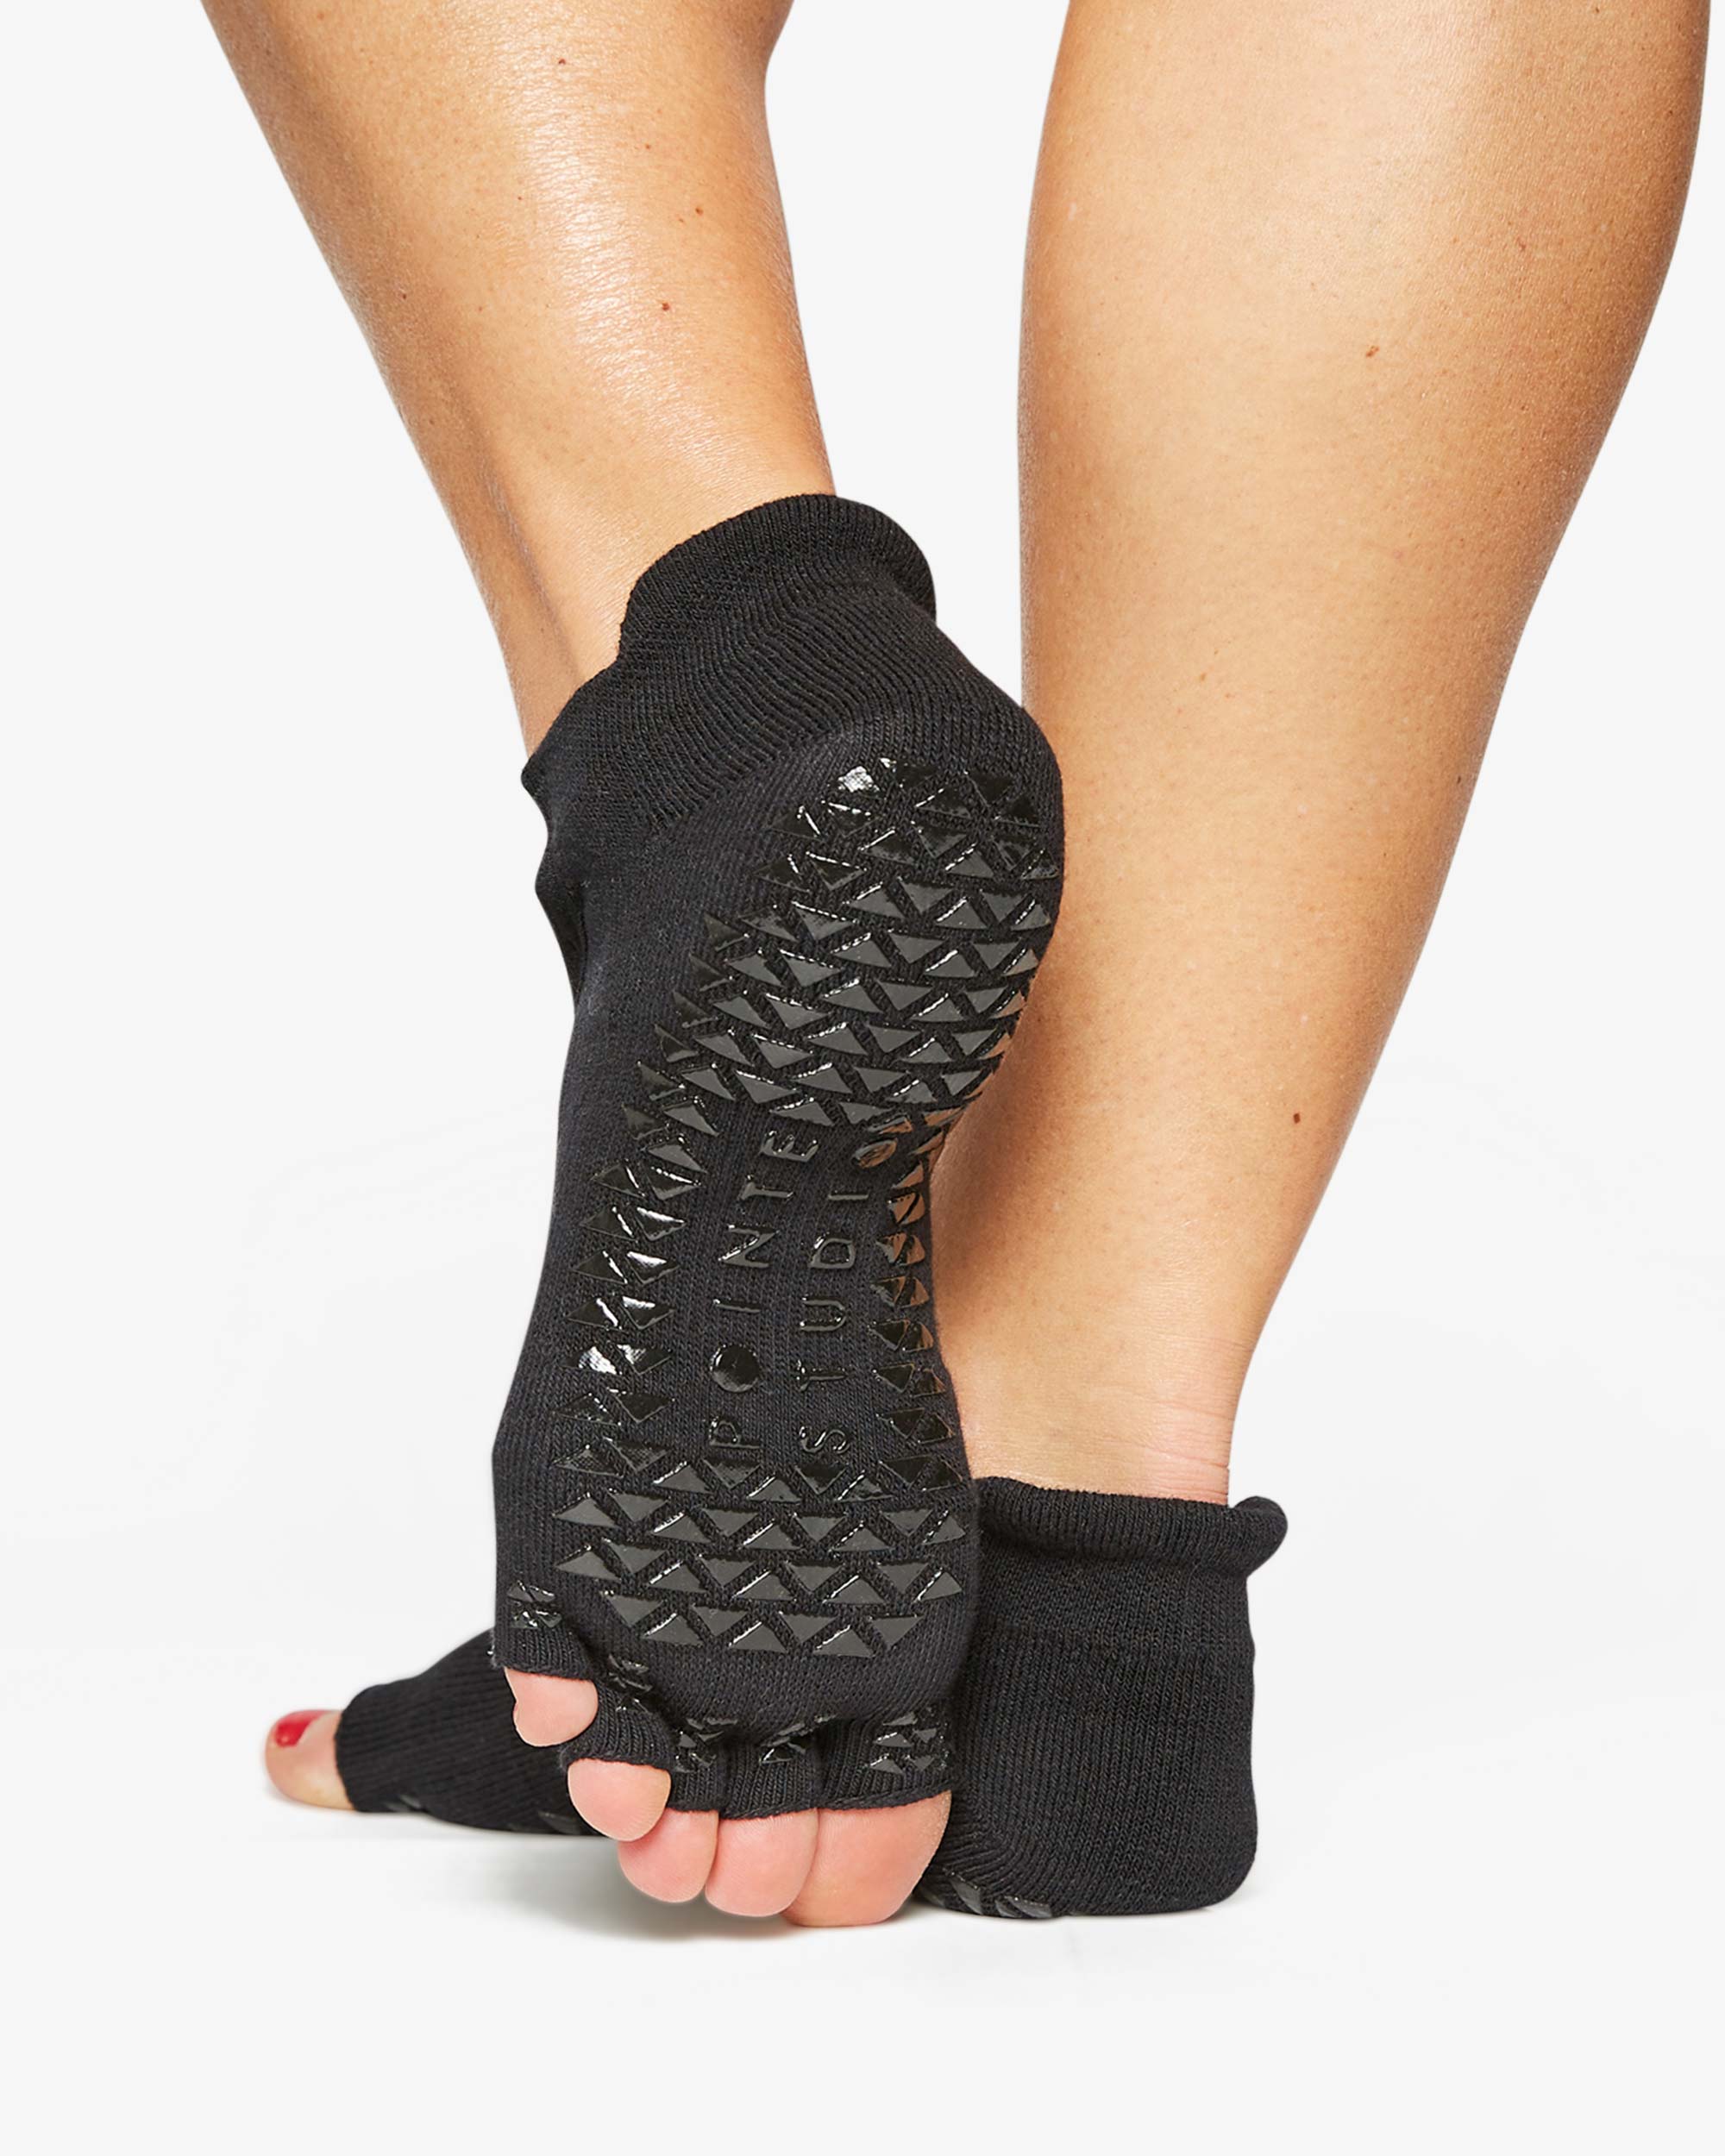 Clean Cut Toeless Grip Sock - pac-mfg